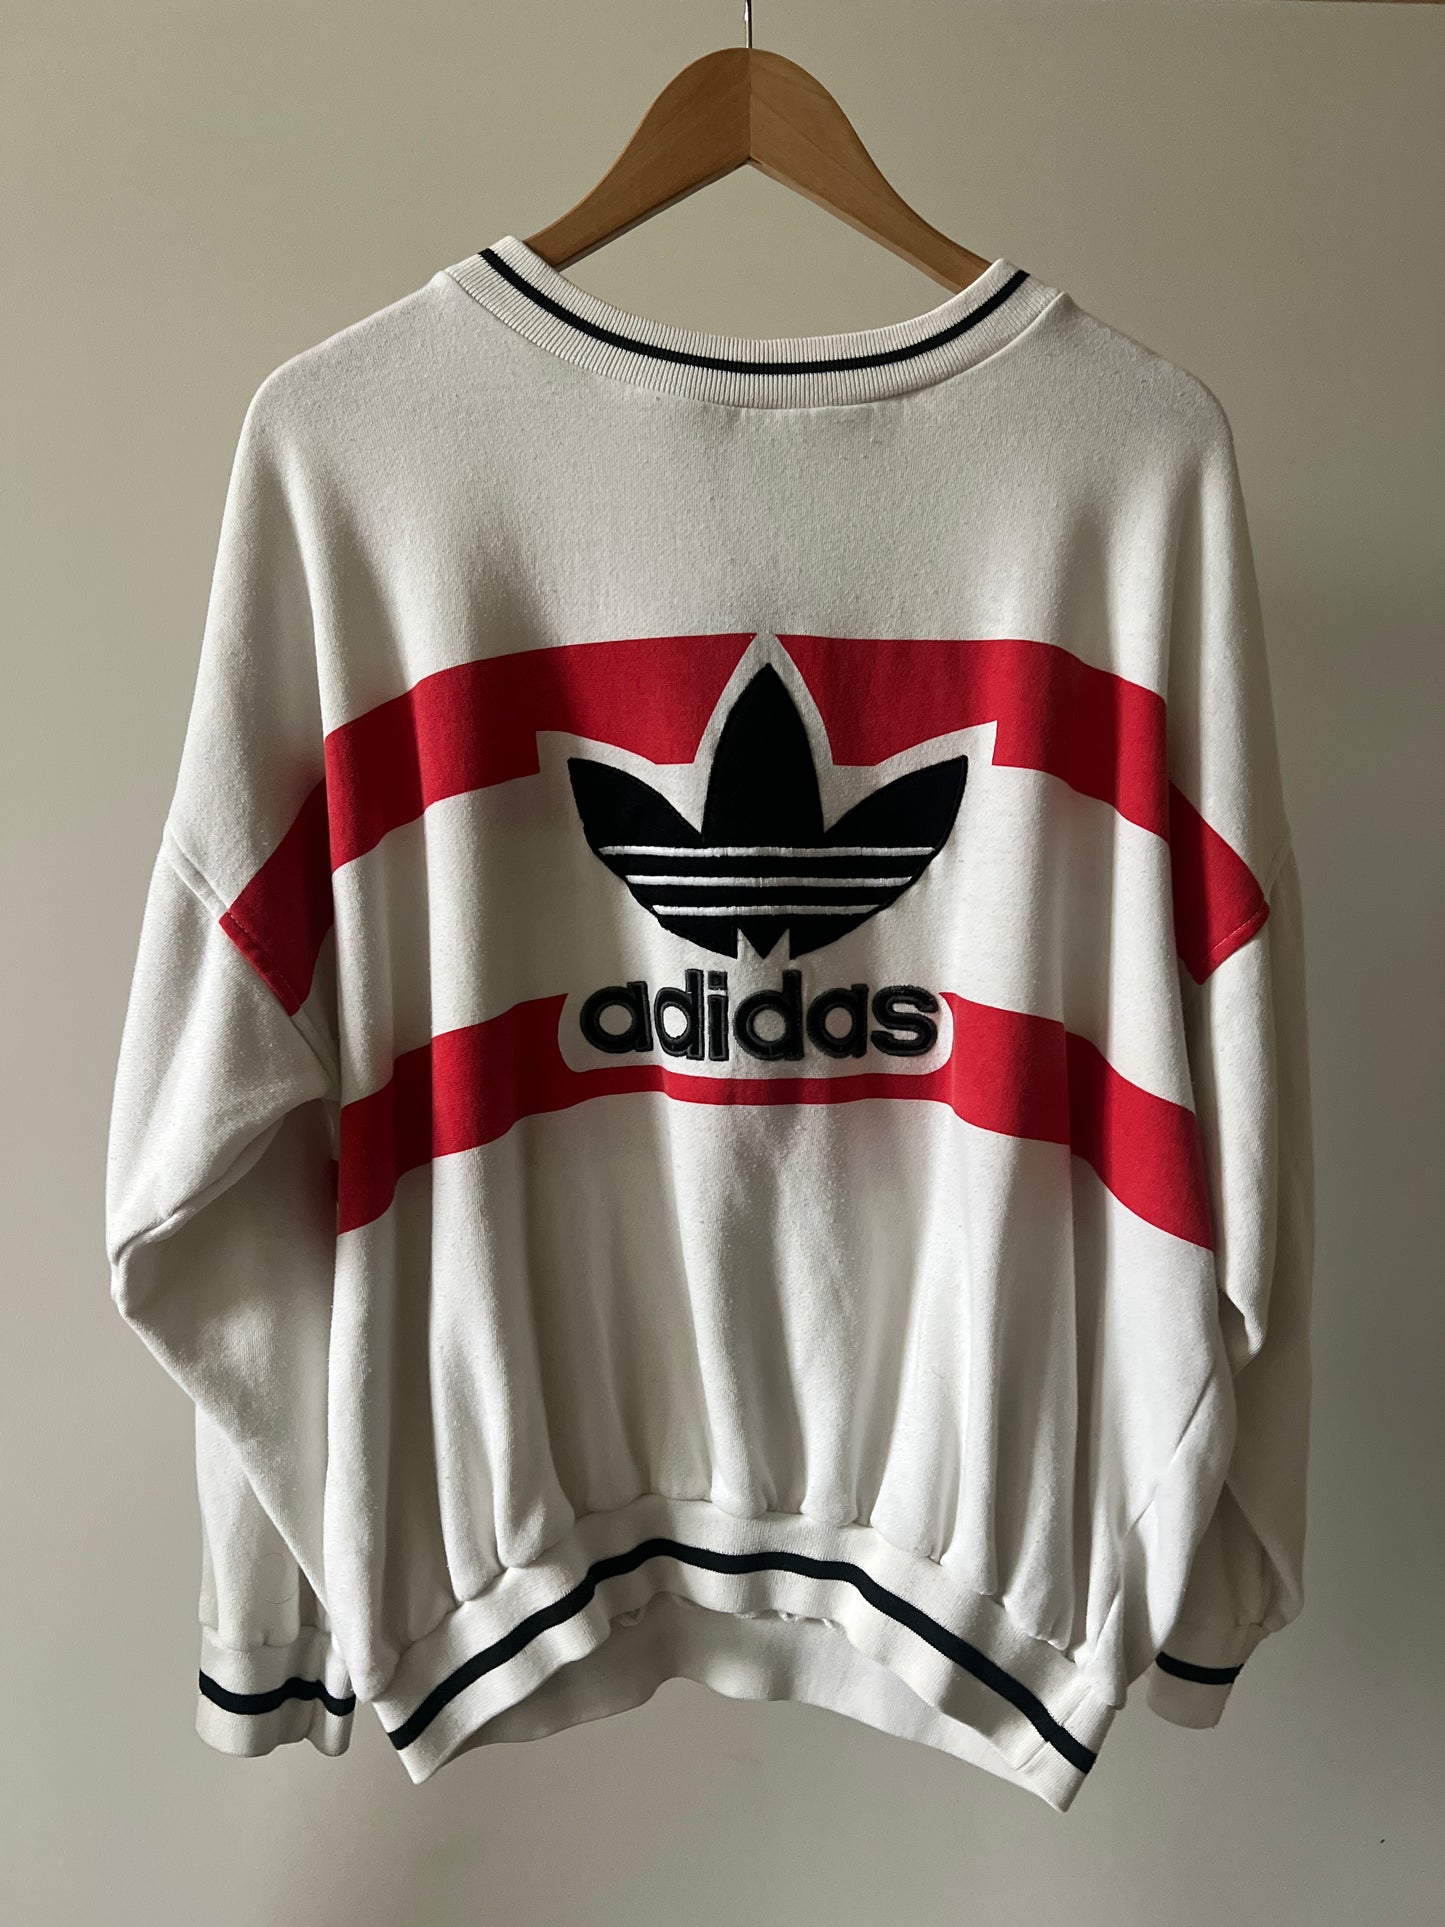 Vintage Adidas Crewneck Sweatshirt (circa 1990s)